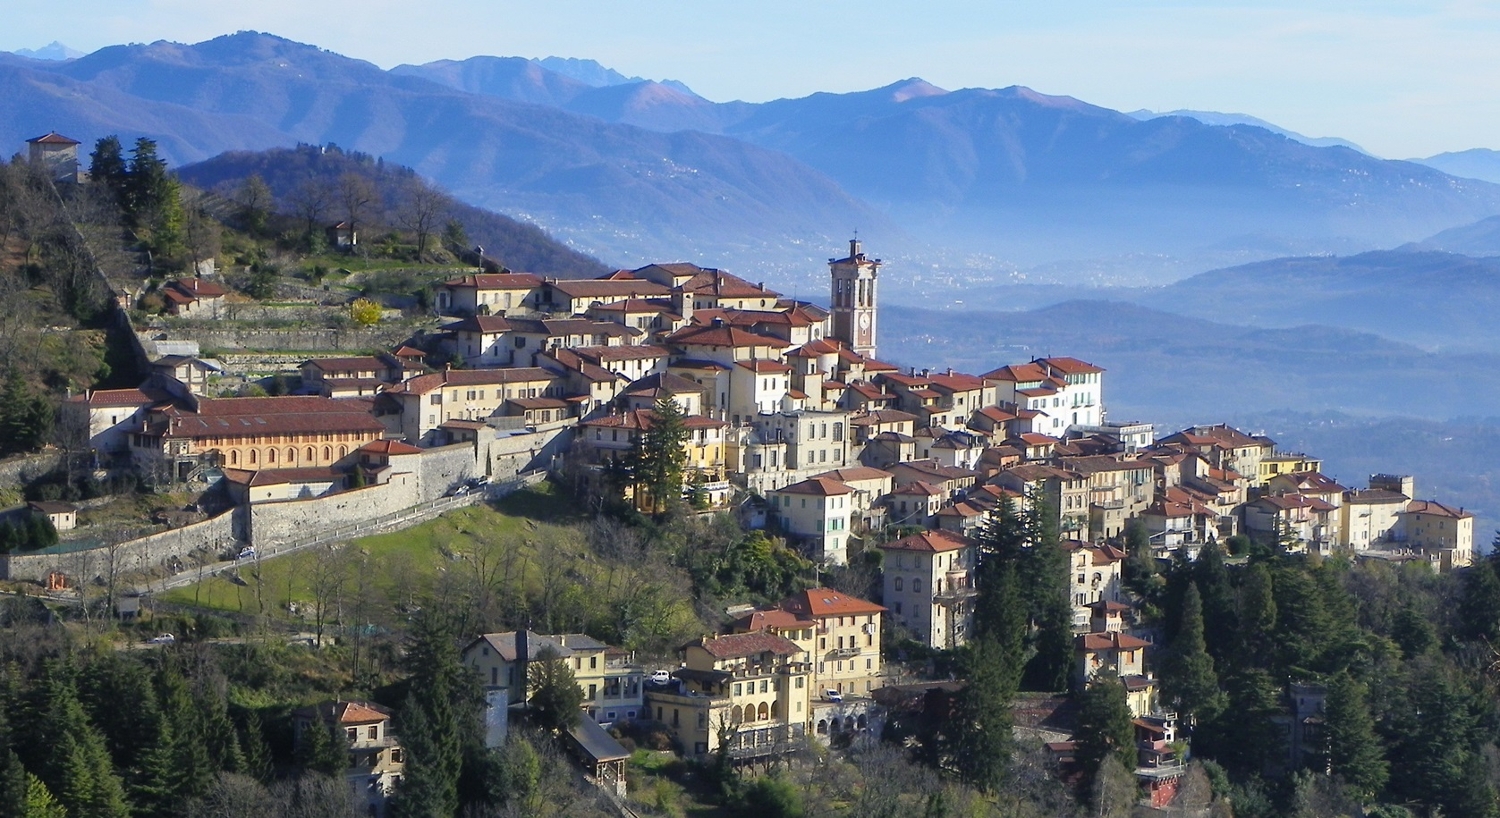 Chiusura invernale per le realtà museali del Sacro Monte di Varese